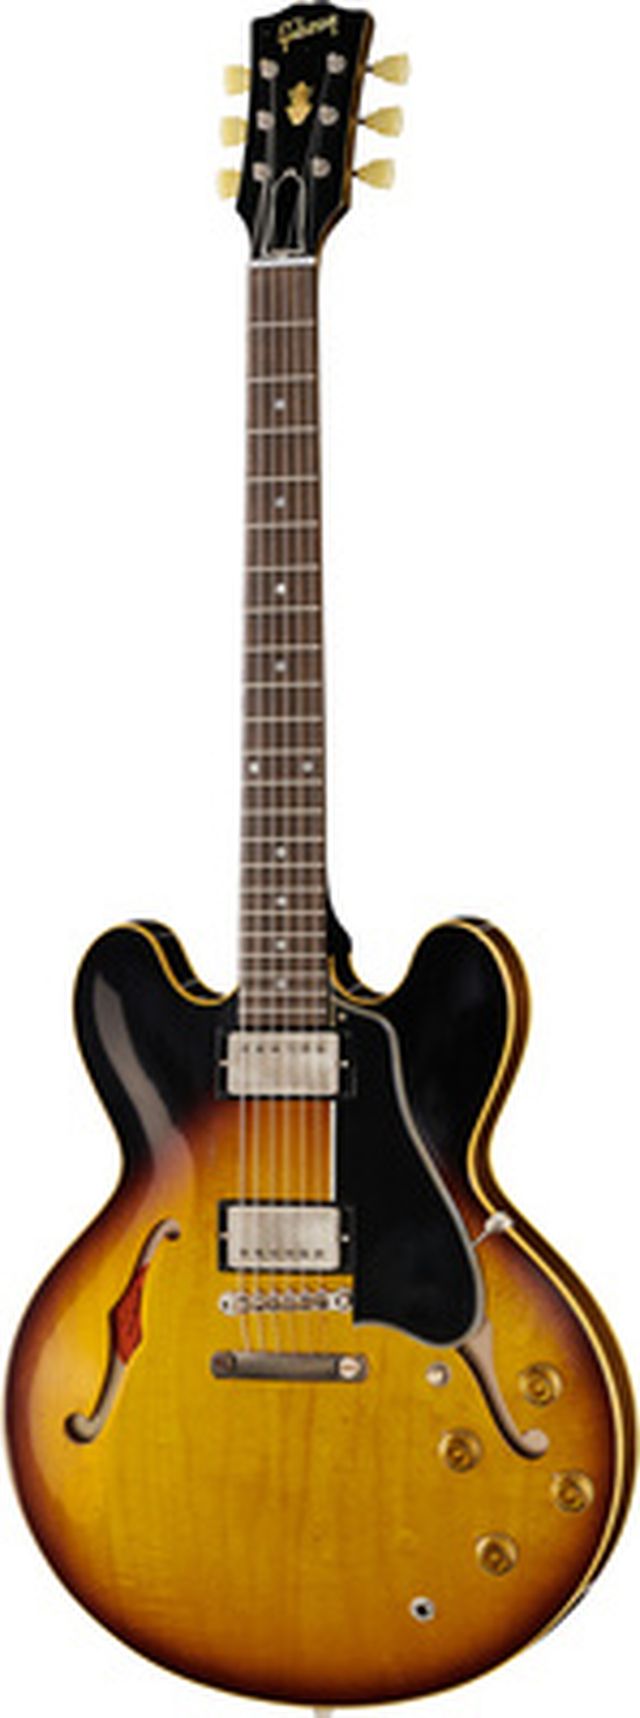 Gibson 1958 ES-335 Reissue HA FTB